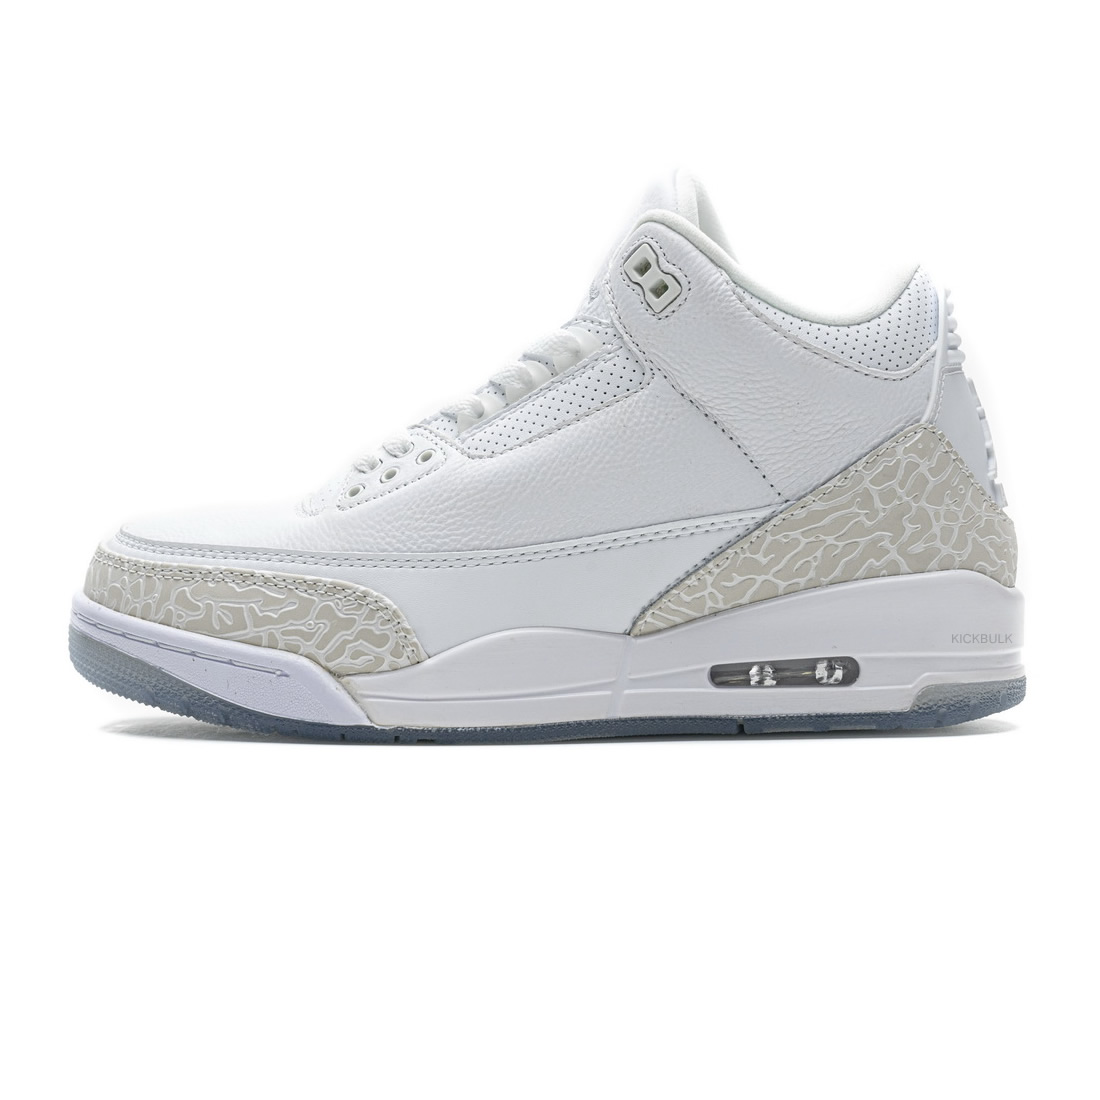 Nike Air Jordan 3 Retro Pure White 136064 111 1 - kickbulk.co